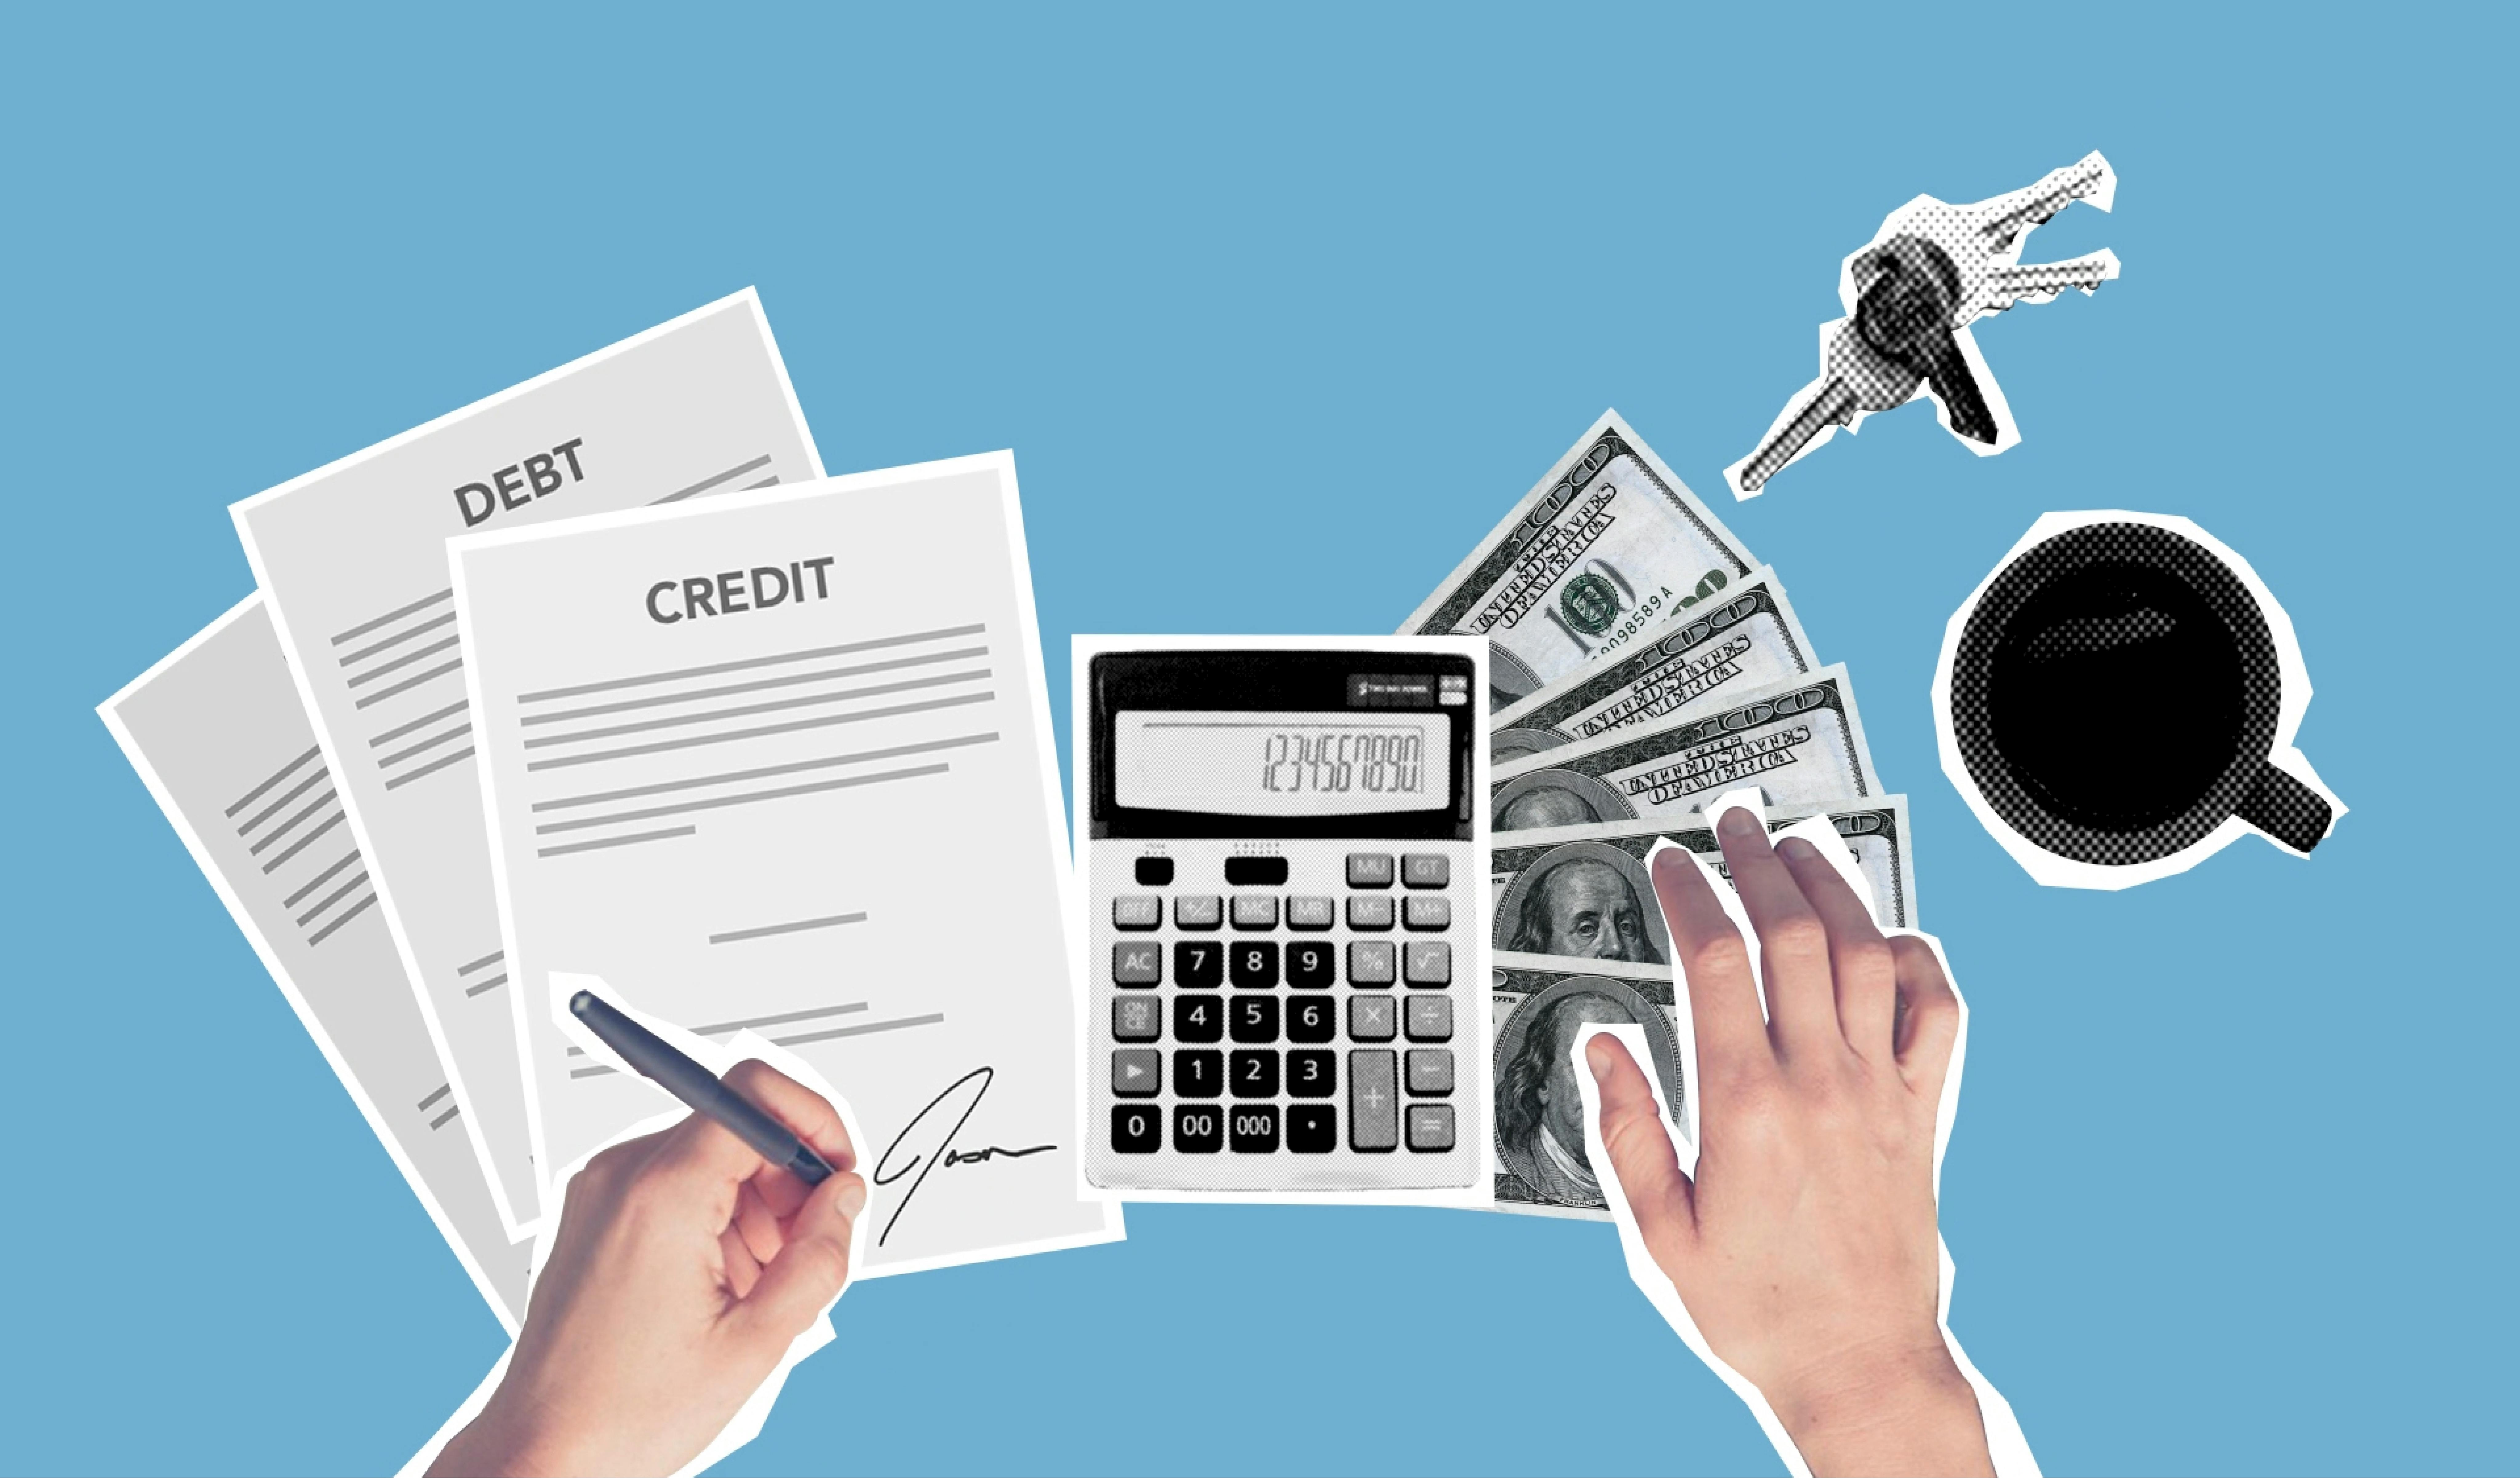 Un montage visuel sur le thème financier avec des documents, de l'argent, une tasse de café et des clés, symbolisant la gestion des finances personnelles.